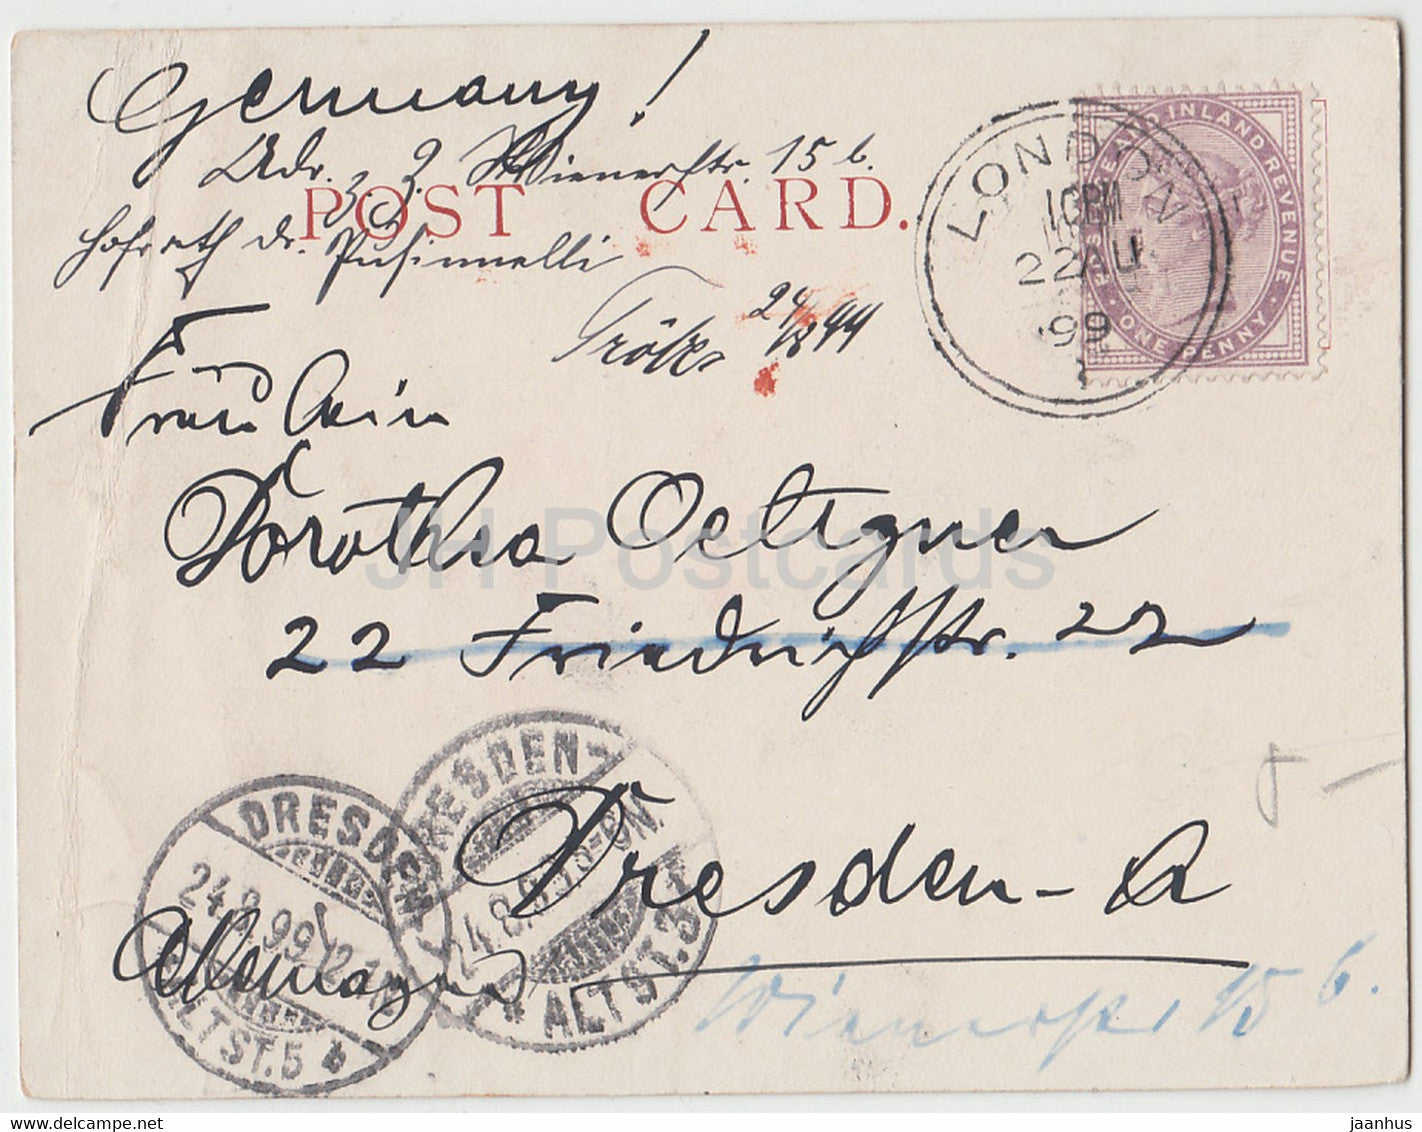 London – Houses of Parliament – ​​Dampfschiff – alte Postkarte – 1899 – England – Vereinigtes Königreich – gebraucht